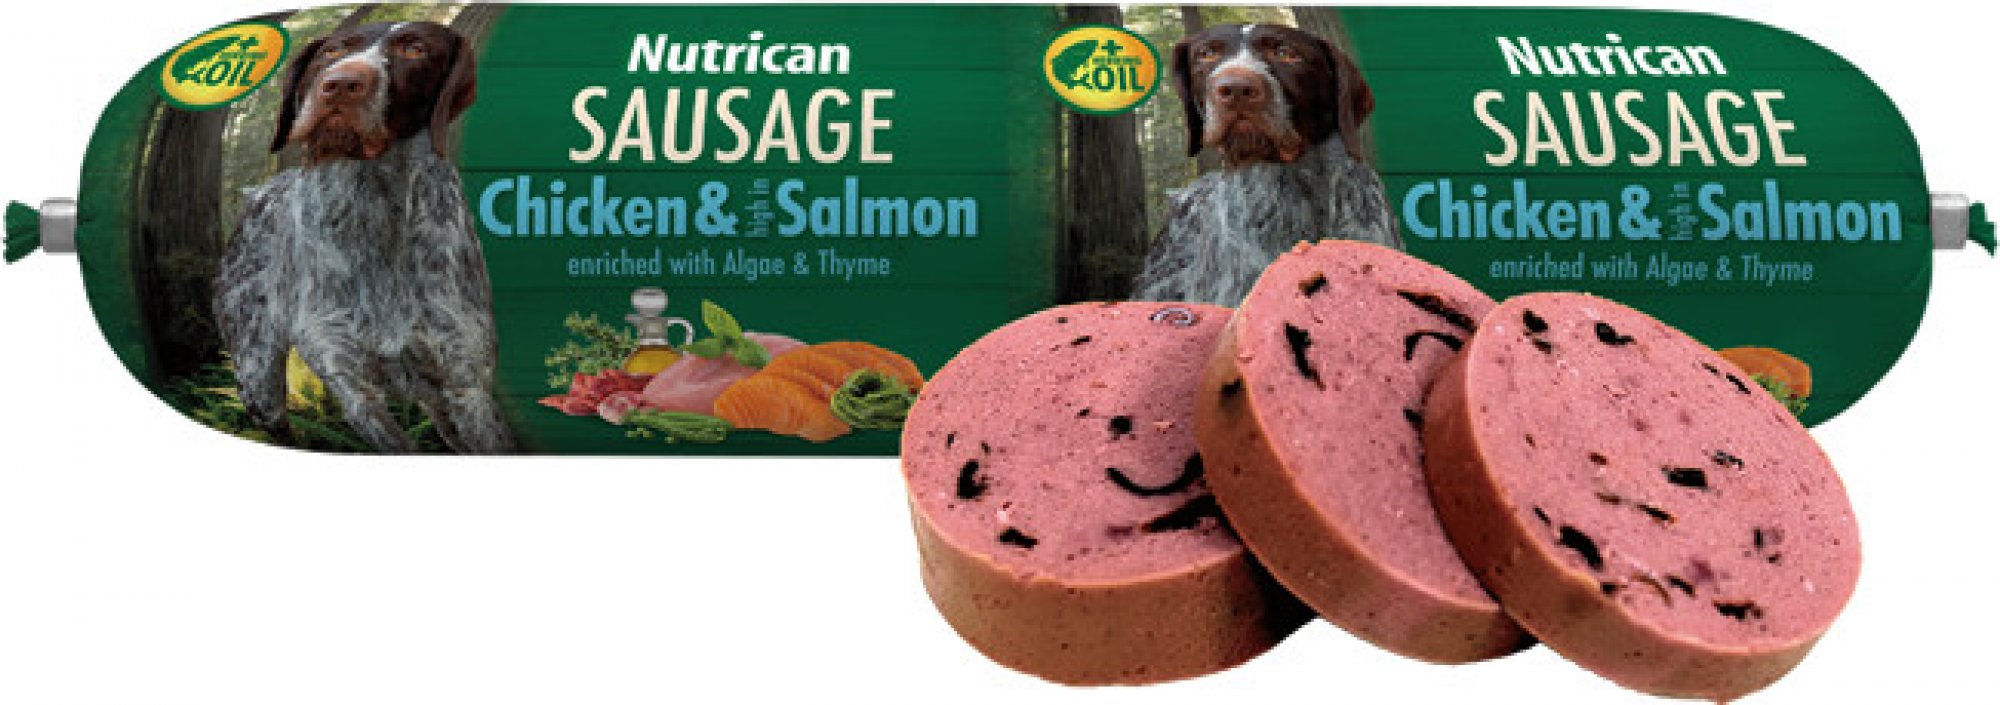 Nutrican Sausage Chicken&Salmon 800g